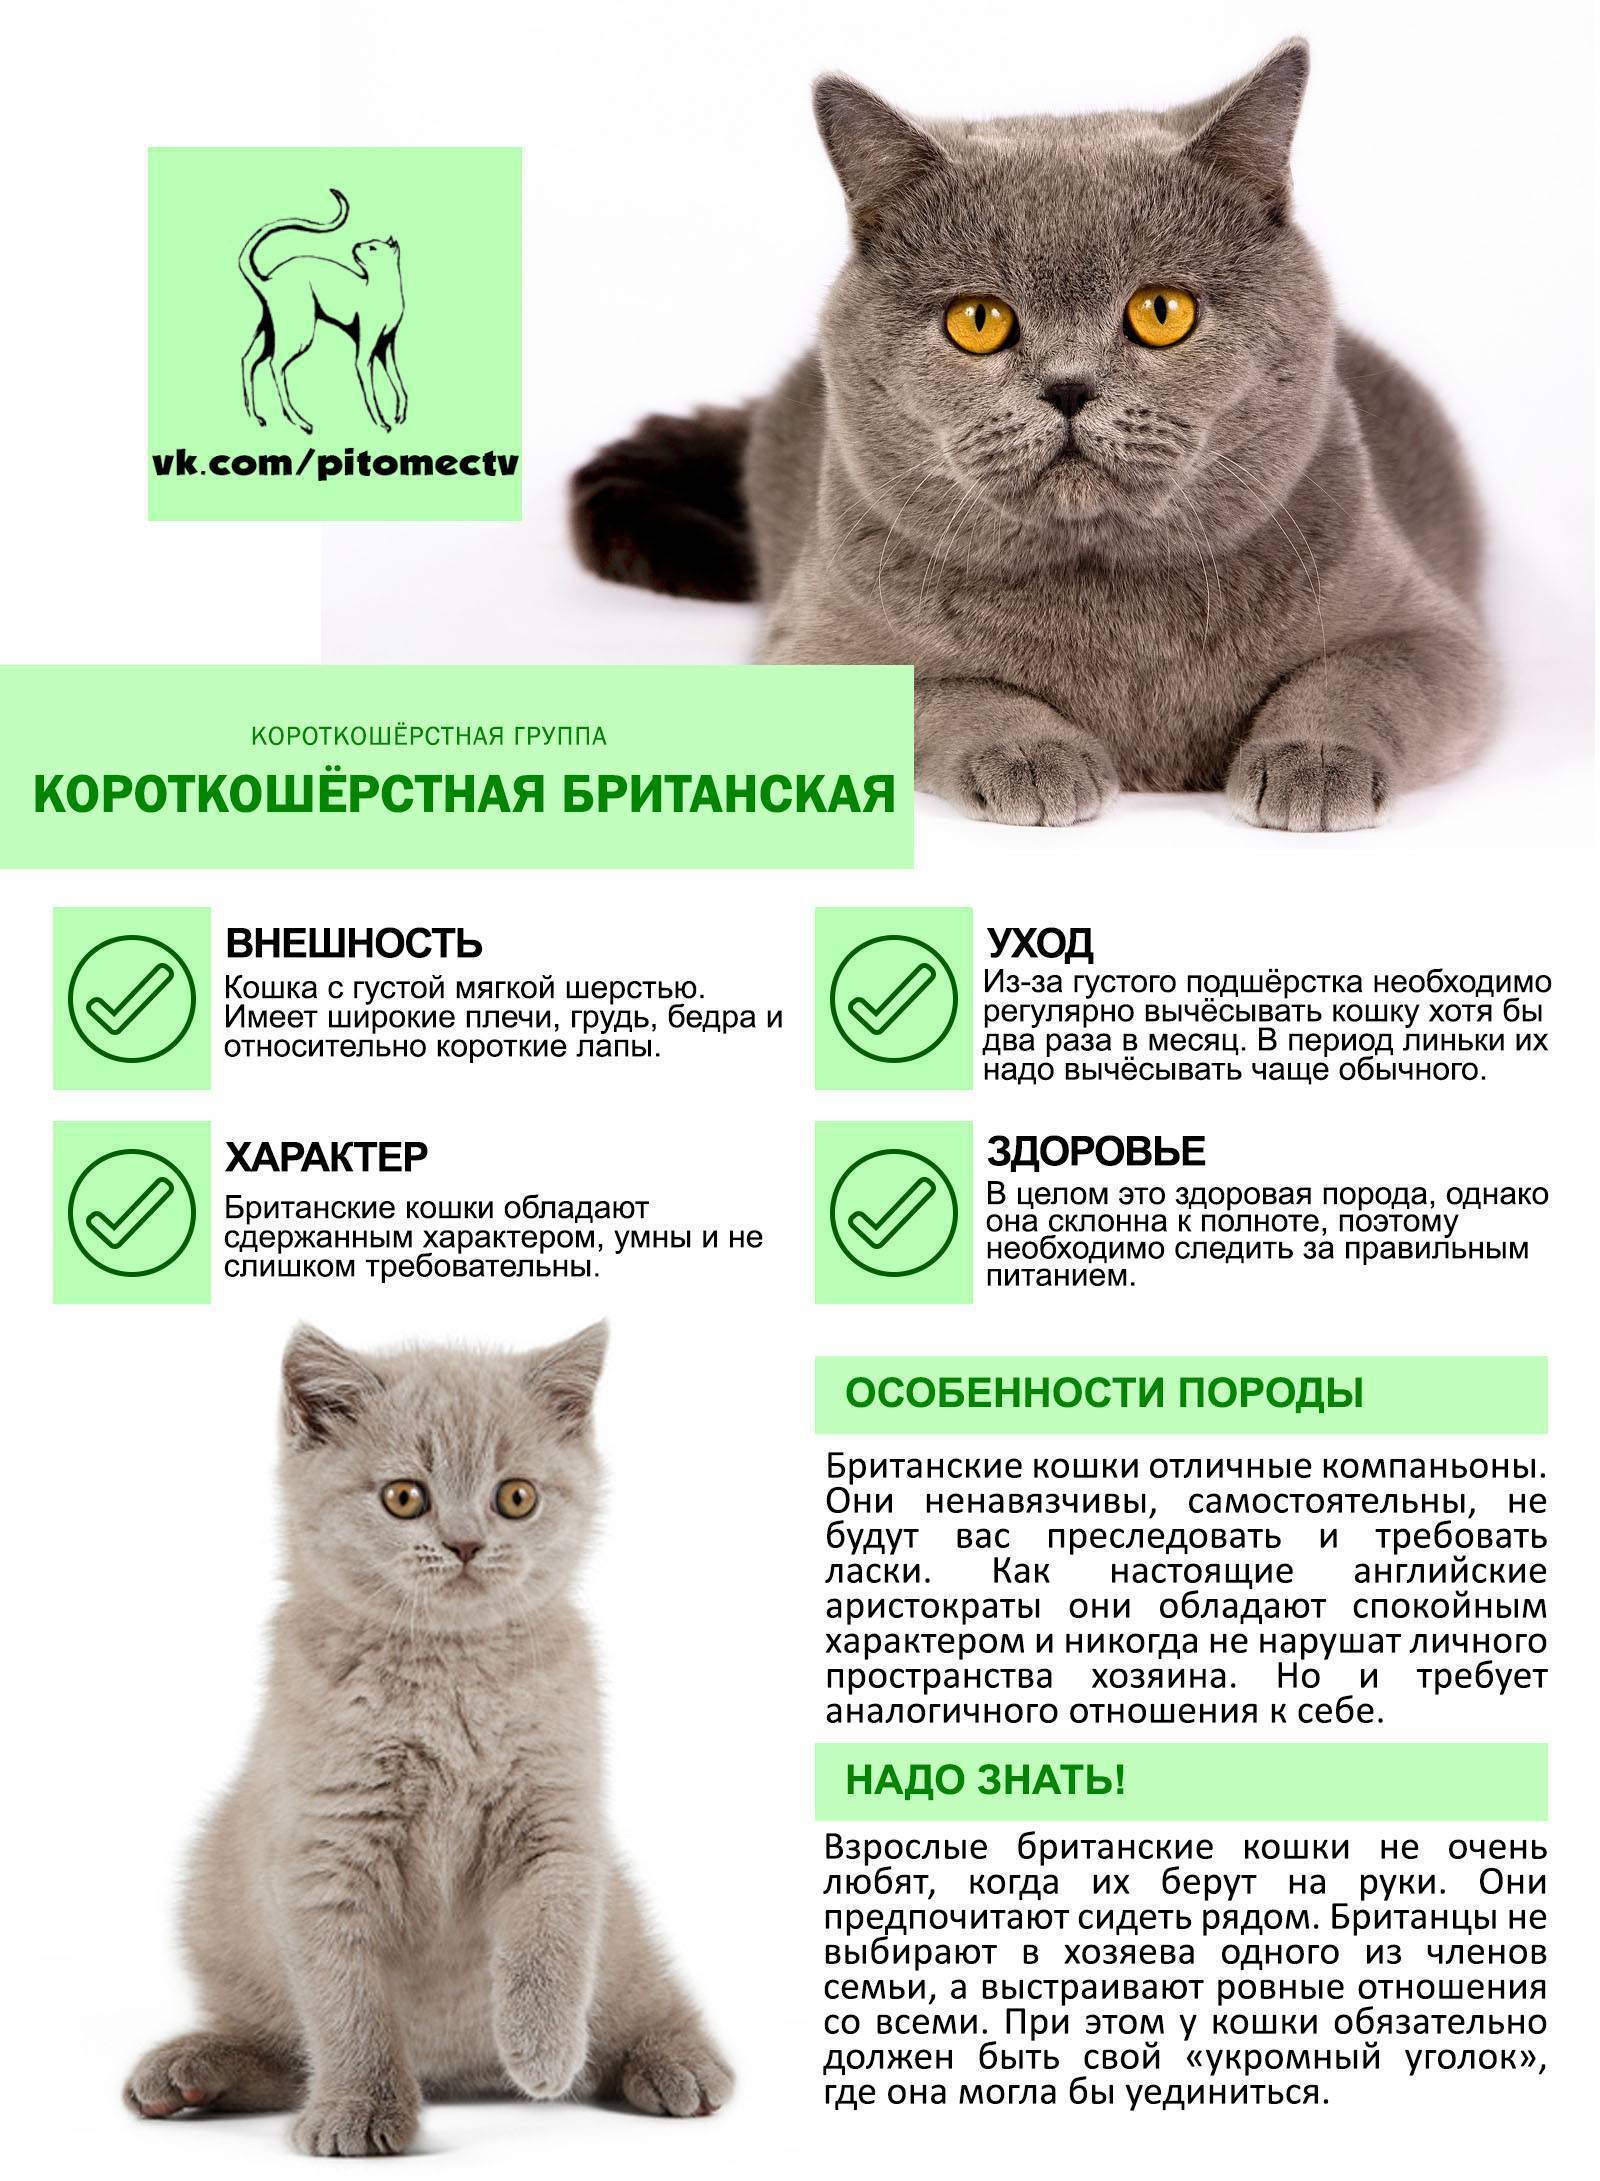 Шотландские вислоухие кошки: правила кормления в домашних условиях